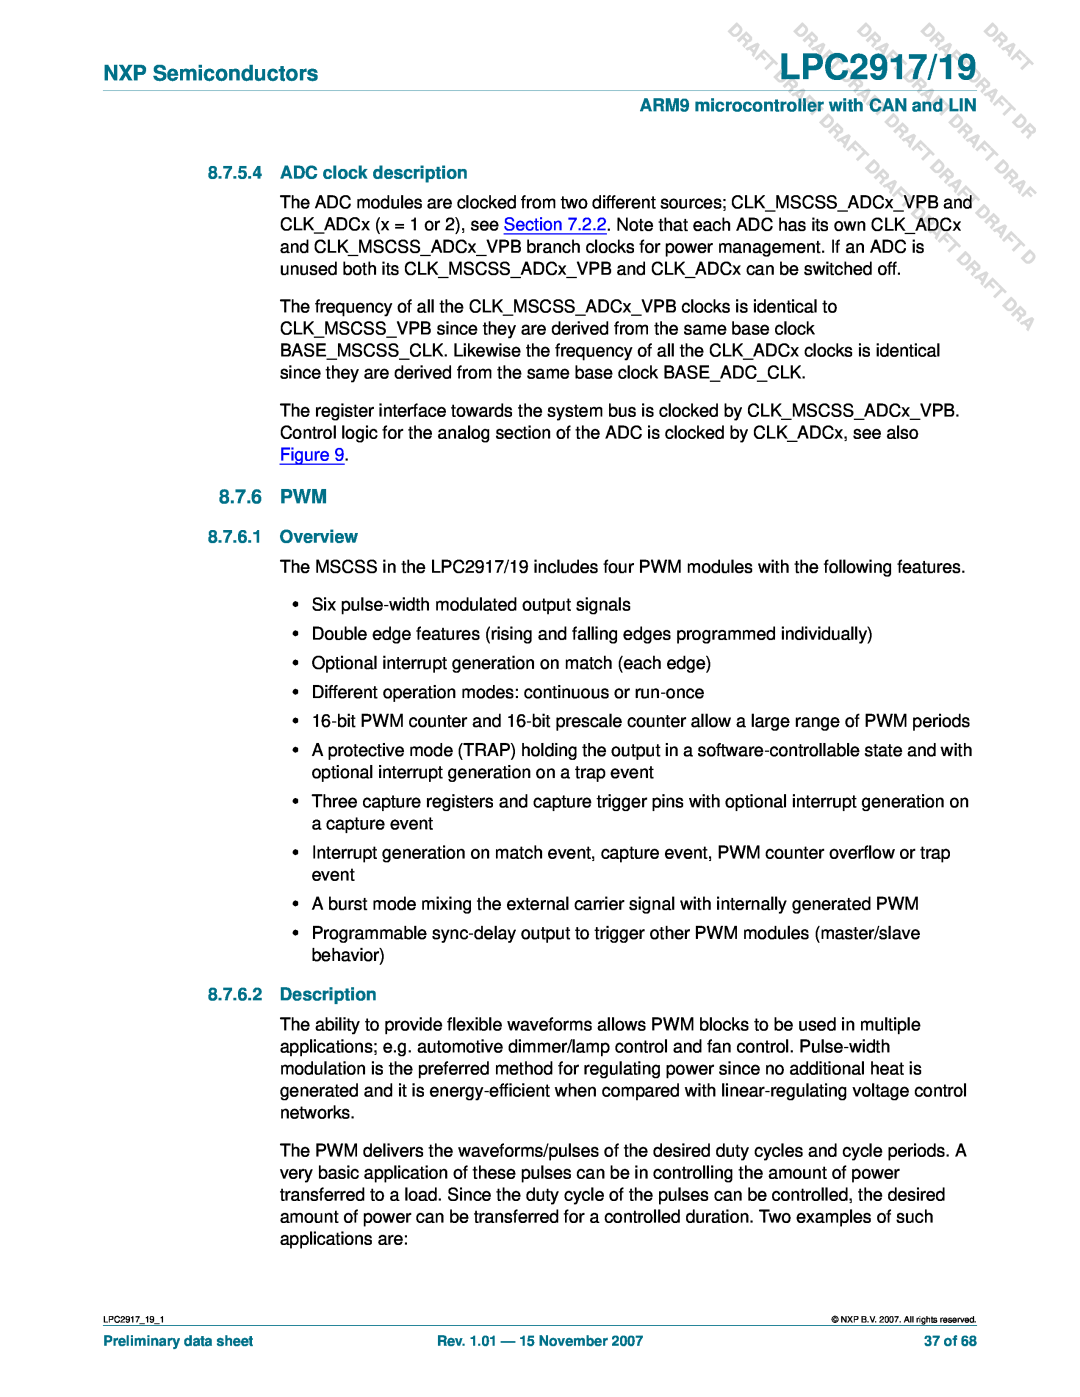 NXP Semiconductors 8.7.6 PWM, ADC clock description, Overview, Description, DLPC2917/19, Raft Aft, T Draft, Draft Draft 